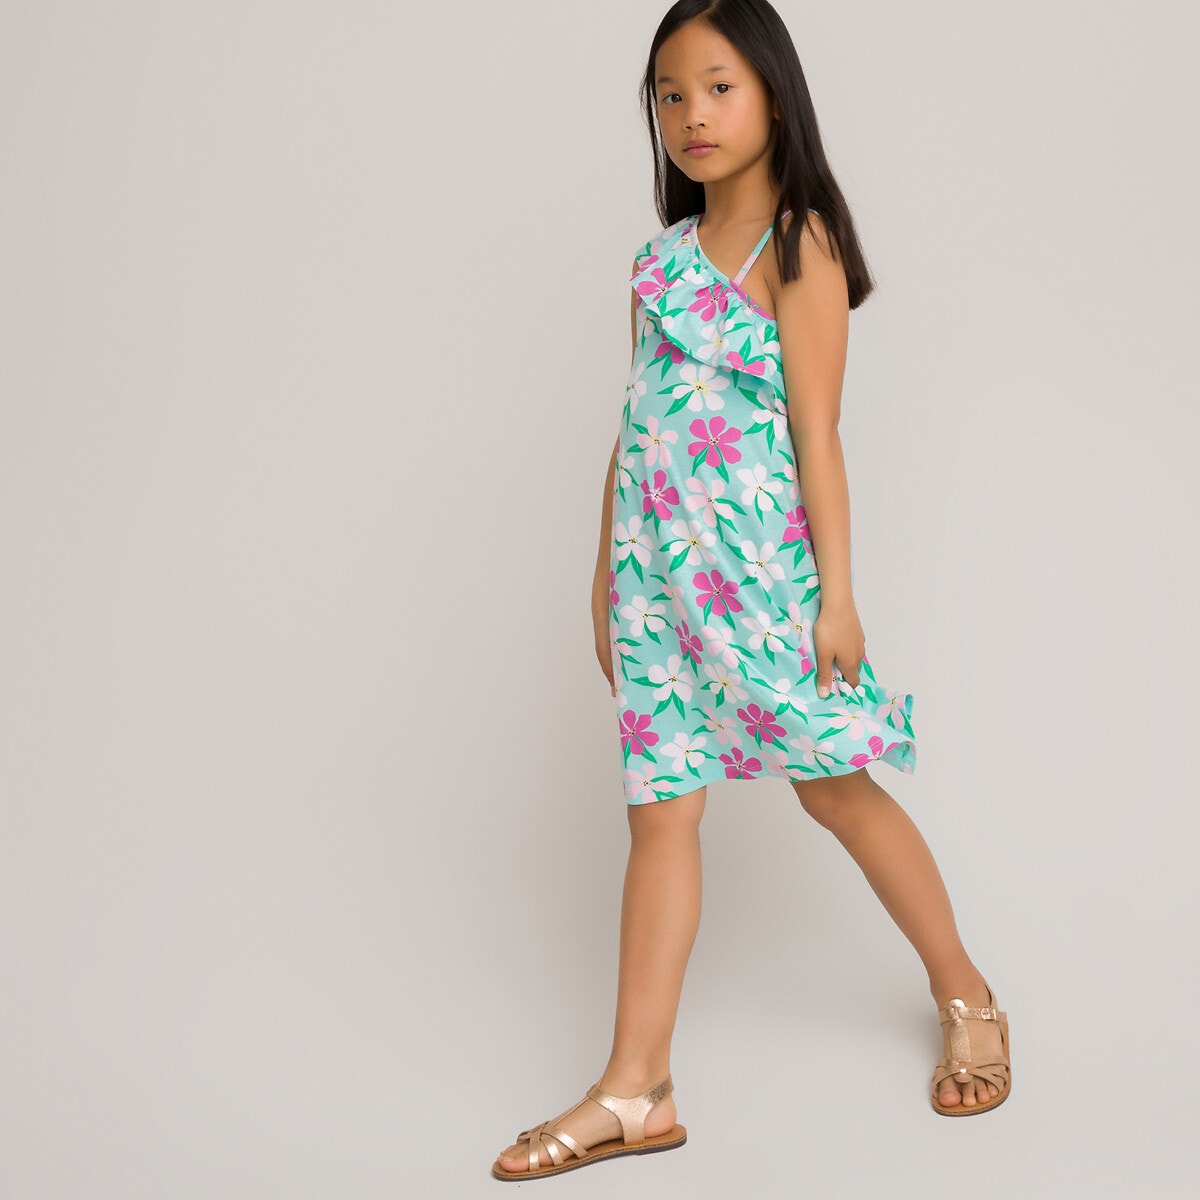 ΠΑΙΔΙ | Φορέματα | Αμάνικα Εμπριμέ έξωμο φόρεμα με βολάν από οργανικό βαμβάκι, 3-12 ετών